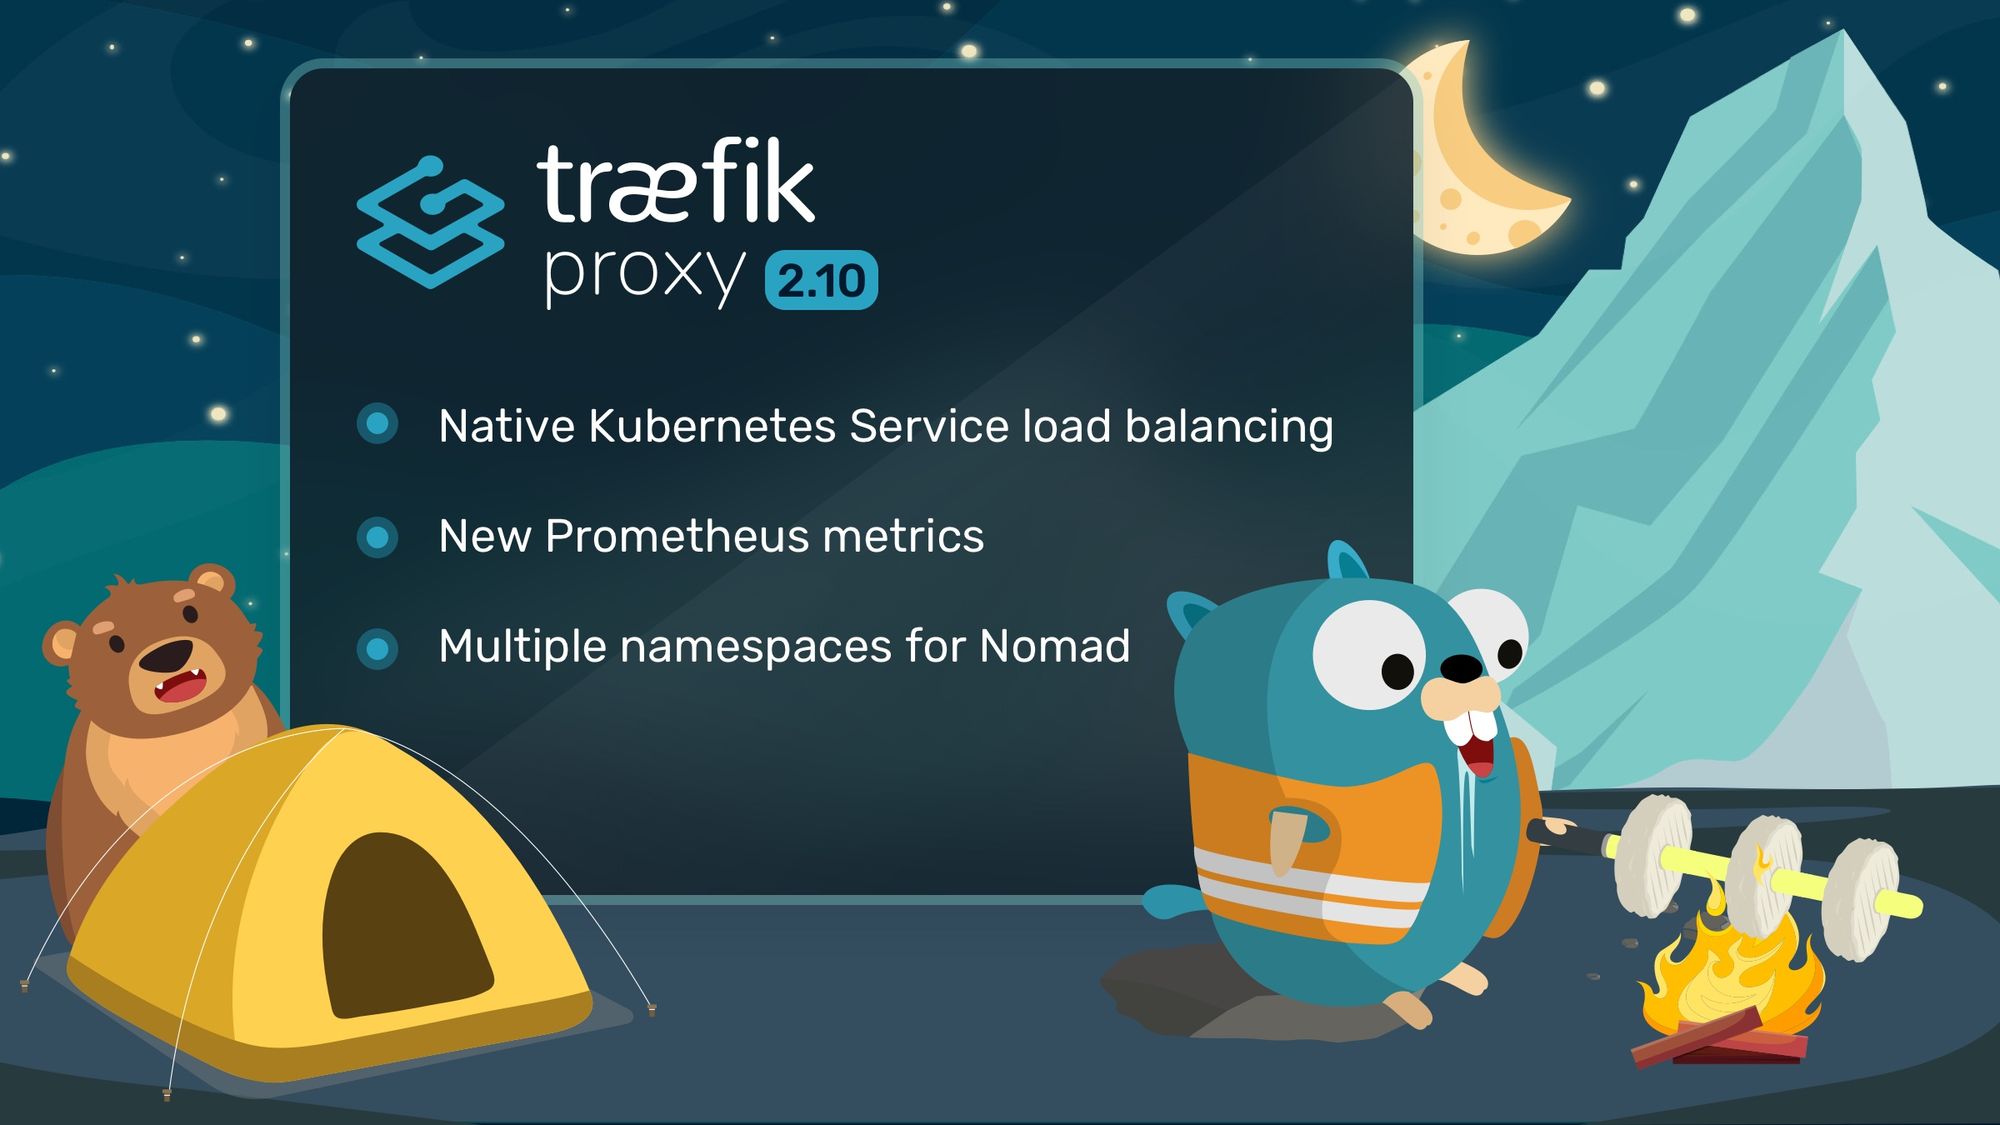 Traefik Proxy 2.10 with improved native Kubernetes Service load balancing, new Prometheus metrics, new API group